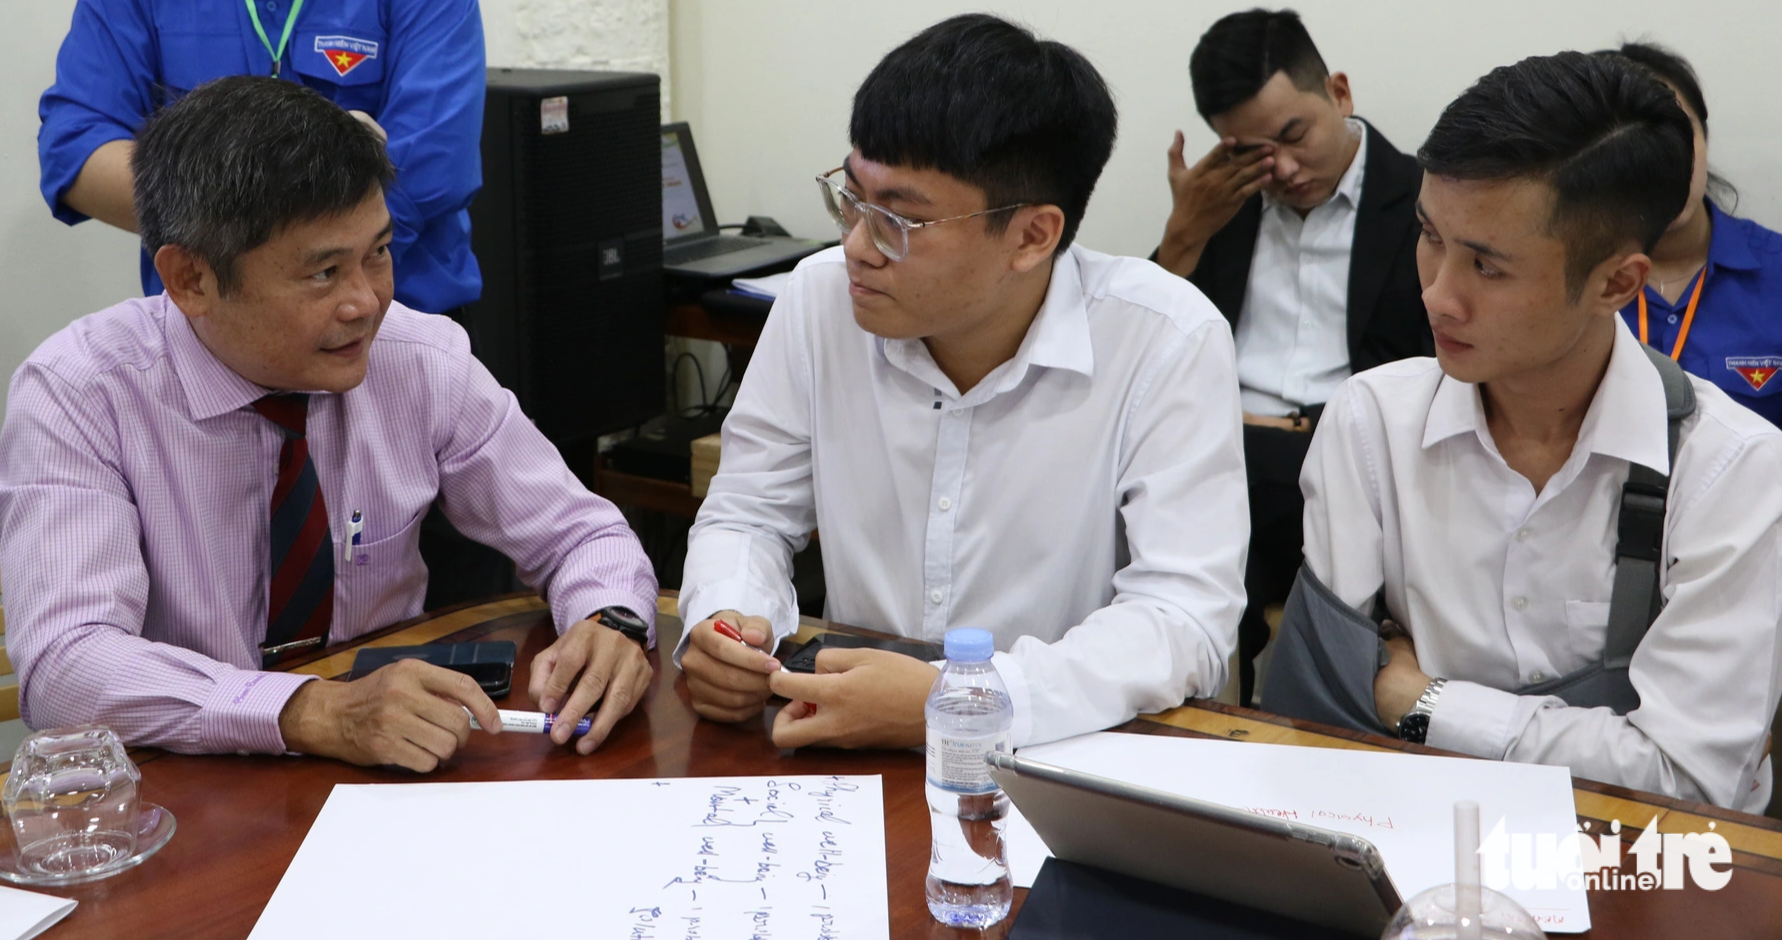 Đại biểu trao đổi cùng PGS.TS.BS Nguyễn Duy Phong (bên trái) - Đại học Y Dược TP.HCM - liên quan đến các vấn đề về sức khỏe và an sinh - Ảnh: BÌNH MINH